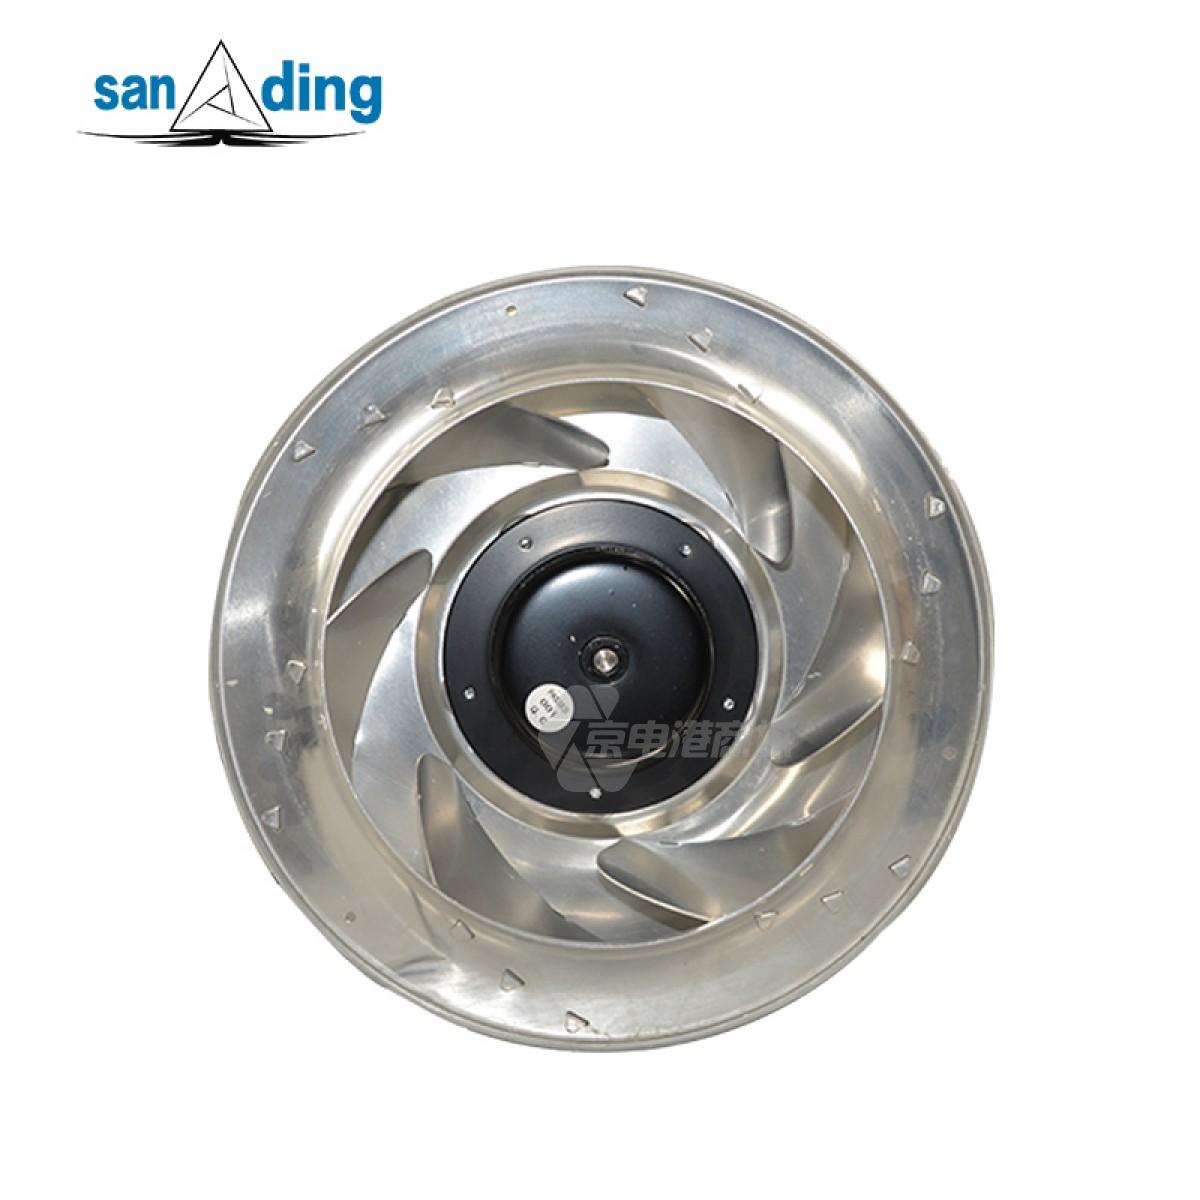 sanding R31092E-23W-B7T 230VAC 1.3A 173W φ310mm 1925rpm Centrifugal fan